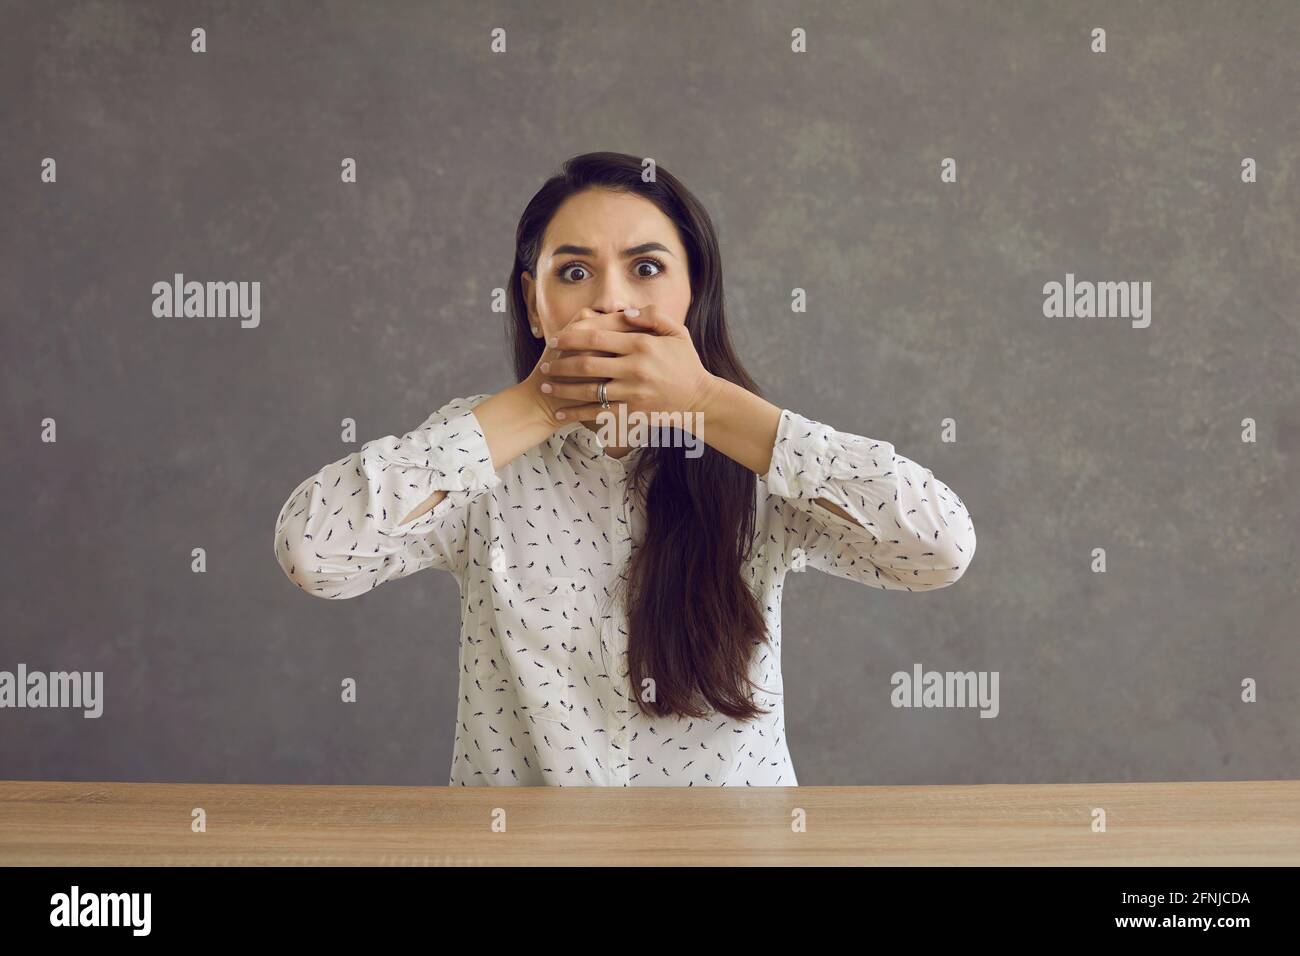 Jeune femme effrayée couvrant la bouche avec la main assise à la table prise de vue en studio Banque D'Images